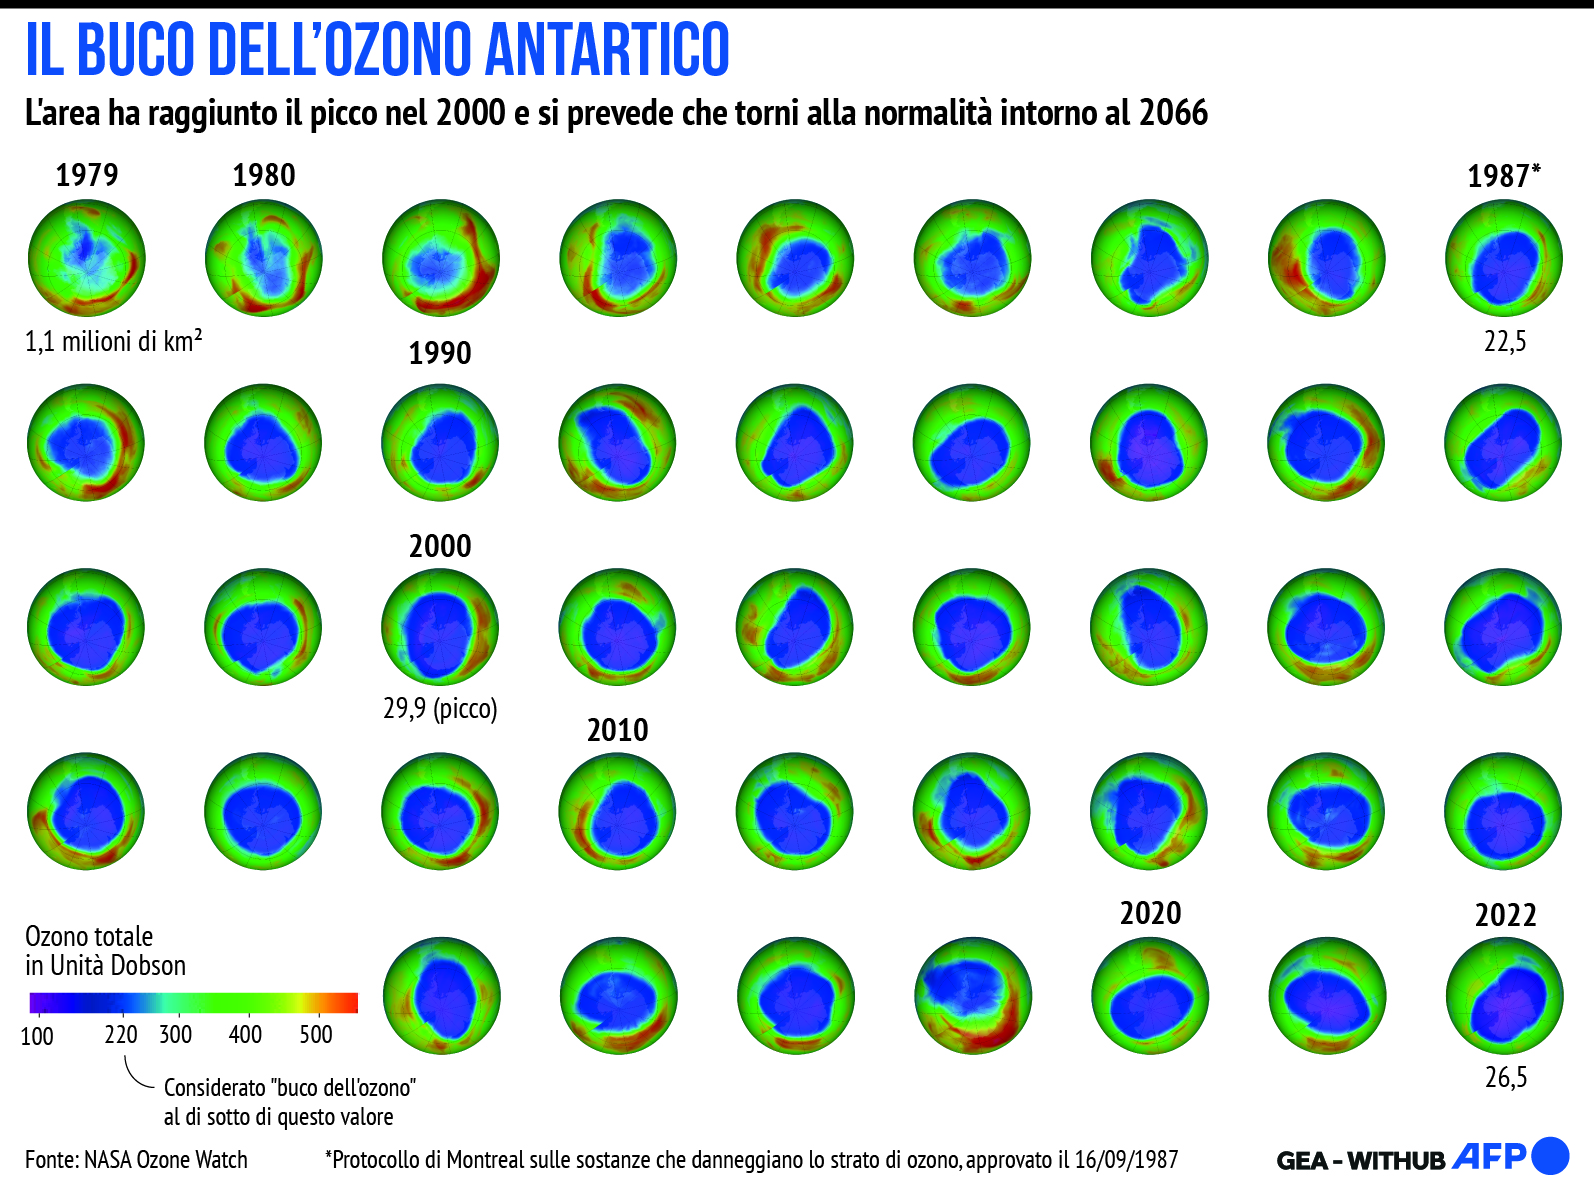 INFOGRAFICA Clima, Onu: Lo strato di ozono potrebbe riprendersi entro 4 decenni <p>Verona, 09 gen (GEA/AFP) - Nell'infografica GEA-Afp, le variazioni di estensione del buco di ozono antartico secondo le rilevazioni della Nasa. Un gruppo di esperti sostenuto dalle Nazioni Unite ha presentato oggi al 103esimo meeting annuale dell'American Meteorological Society i risultati dello studio secondo cui "lo strato di ozono Ã¨ sulla buona strada per riprendersi entro 4 decenni, con l'eliminazione graduale globale delle sostanze chimiche che riducono lo strato di ozono che sta giÃ  beneficiando degli sforzi per mitigare il cambiamento climatico".</p> <p>AFT/VLN</p>